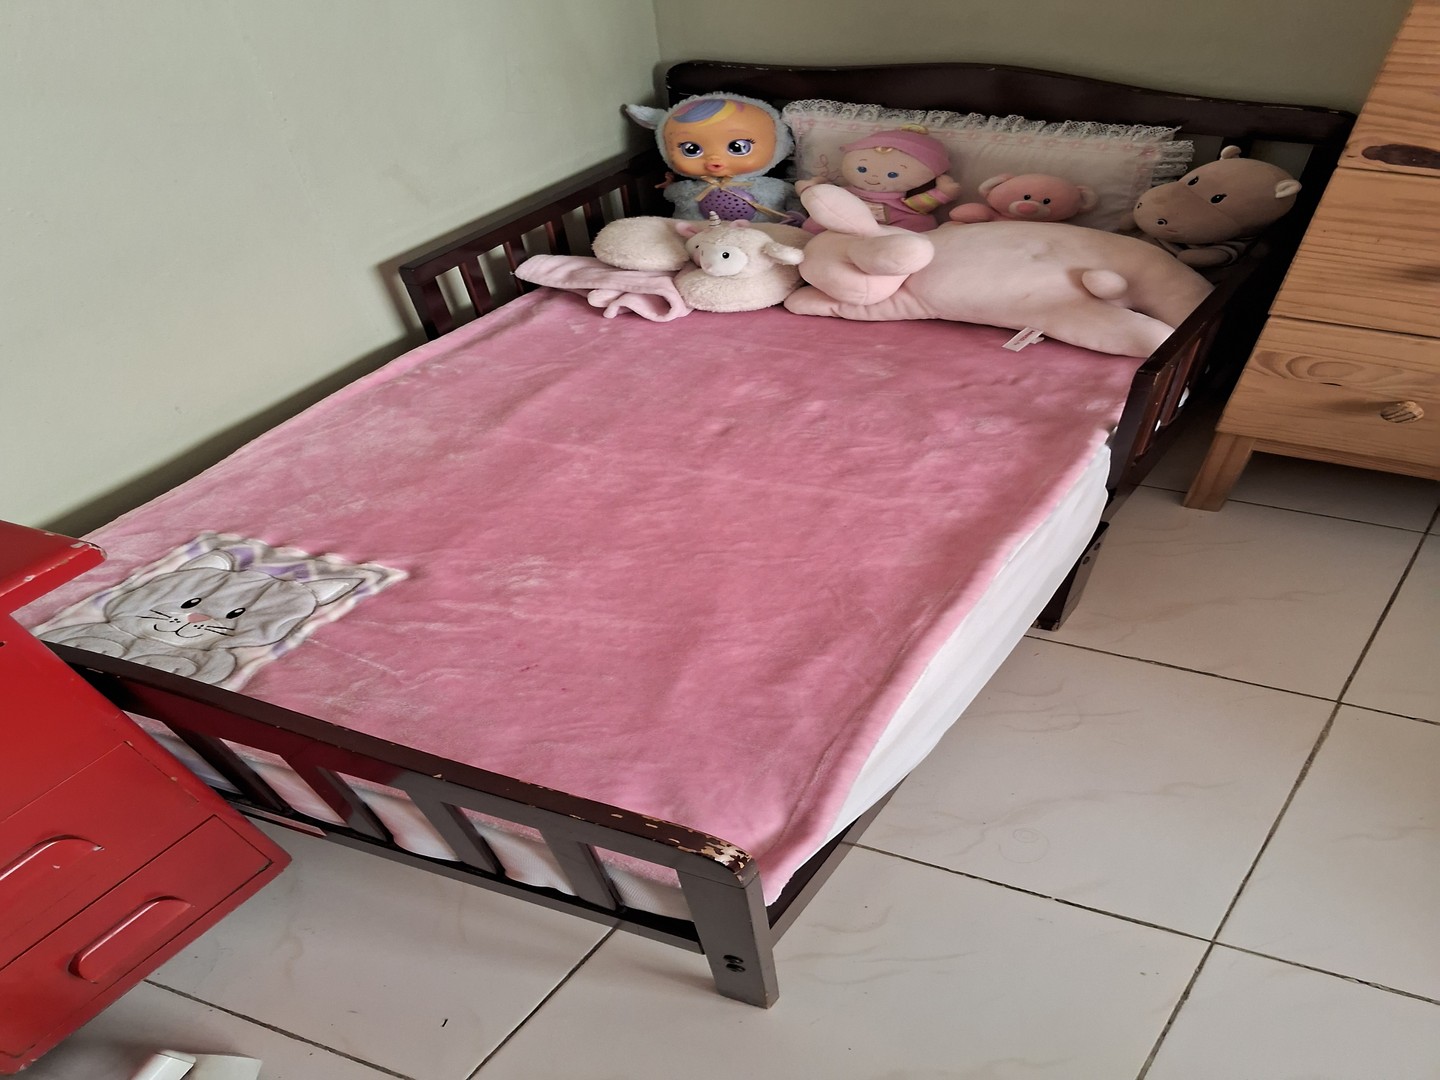 muebles - Vendo cama para niños de 1 a 5 años ( cama todler) con su colchón nuevo incluido 0